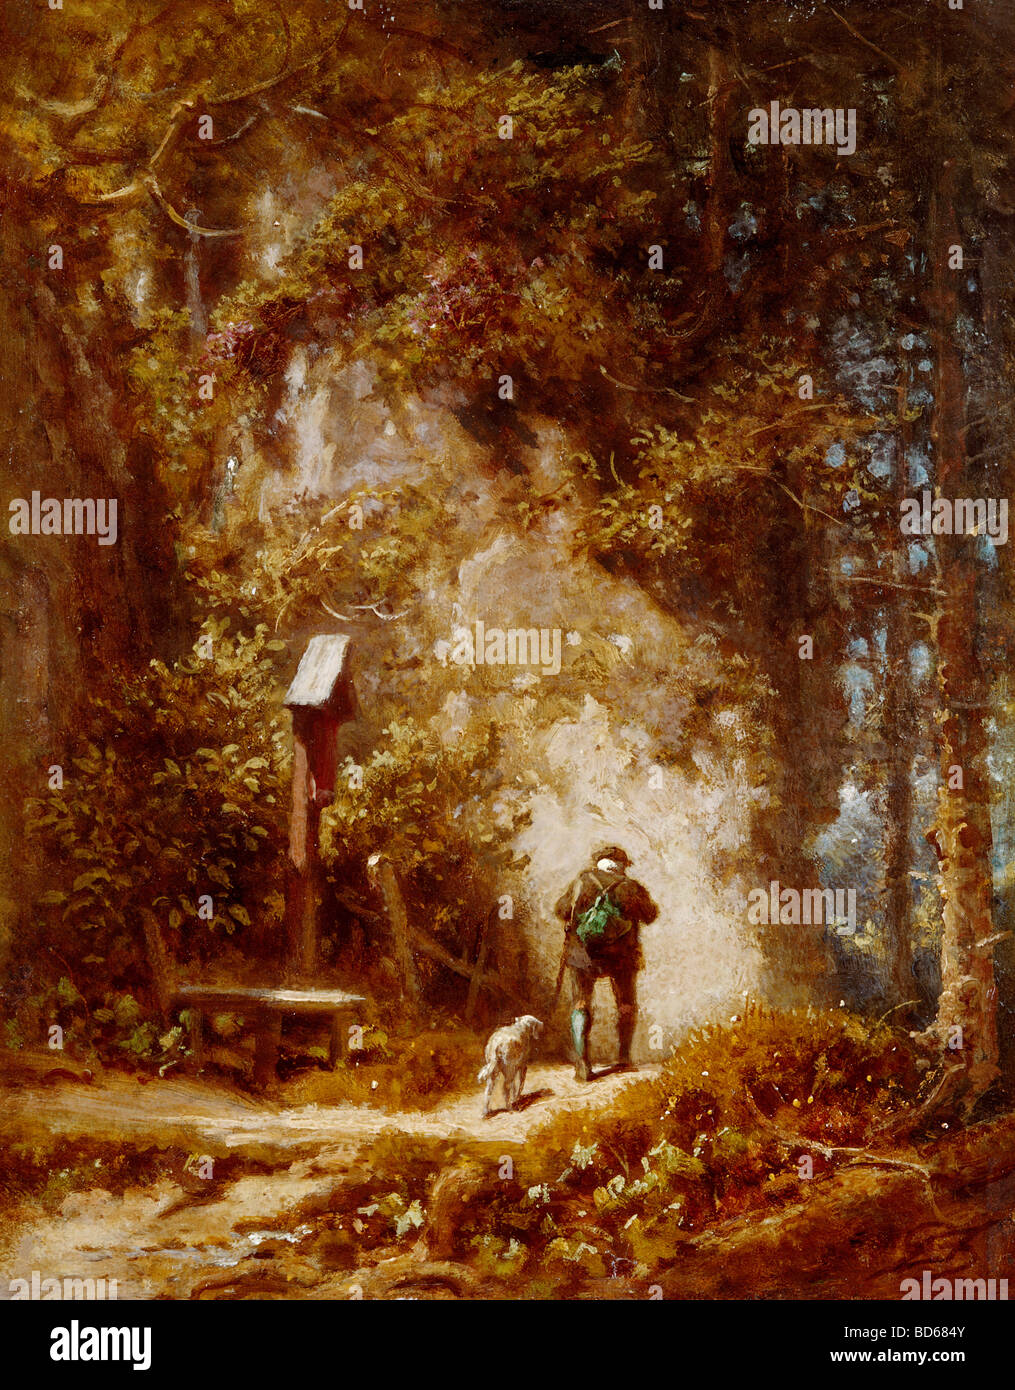 Bildende Kunst, Spitzweg, Carl (1808 – 1885), Malerei, Jäger im Wald, Wimmer-Galerie, München, Holz, Wald, Karl, Deutsch, Biedermann Stockfoto